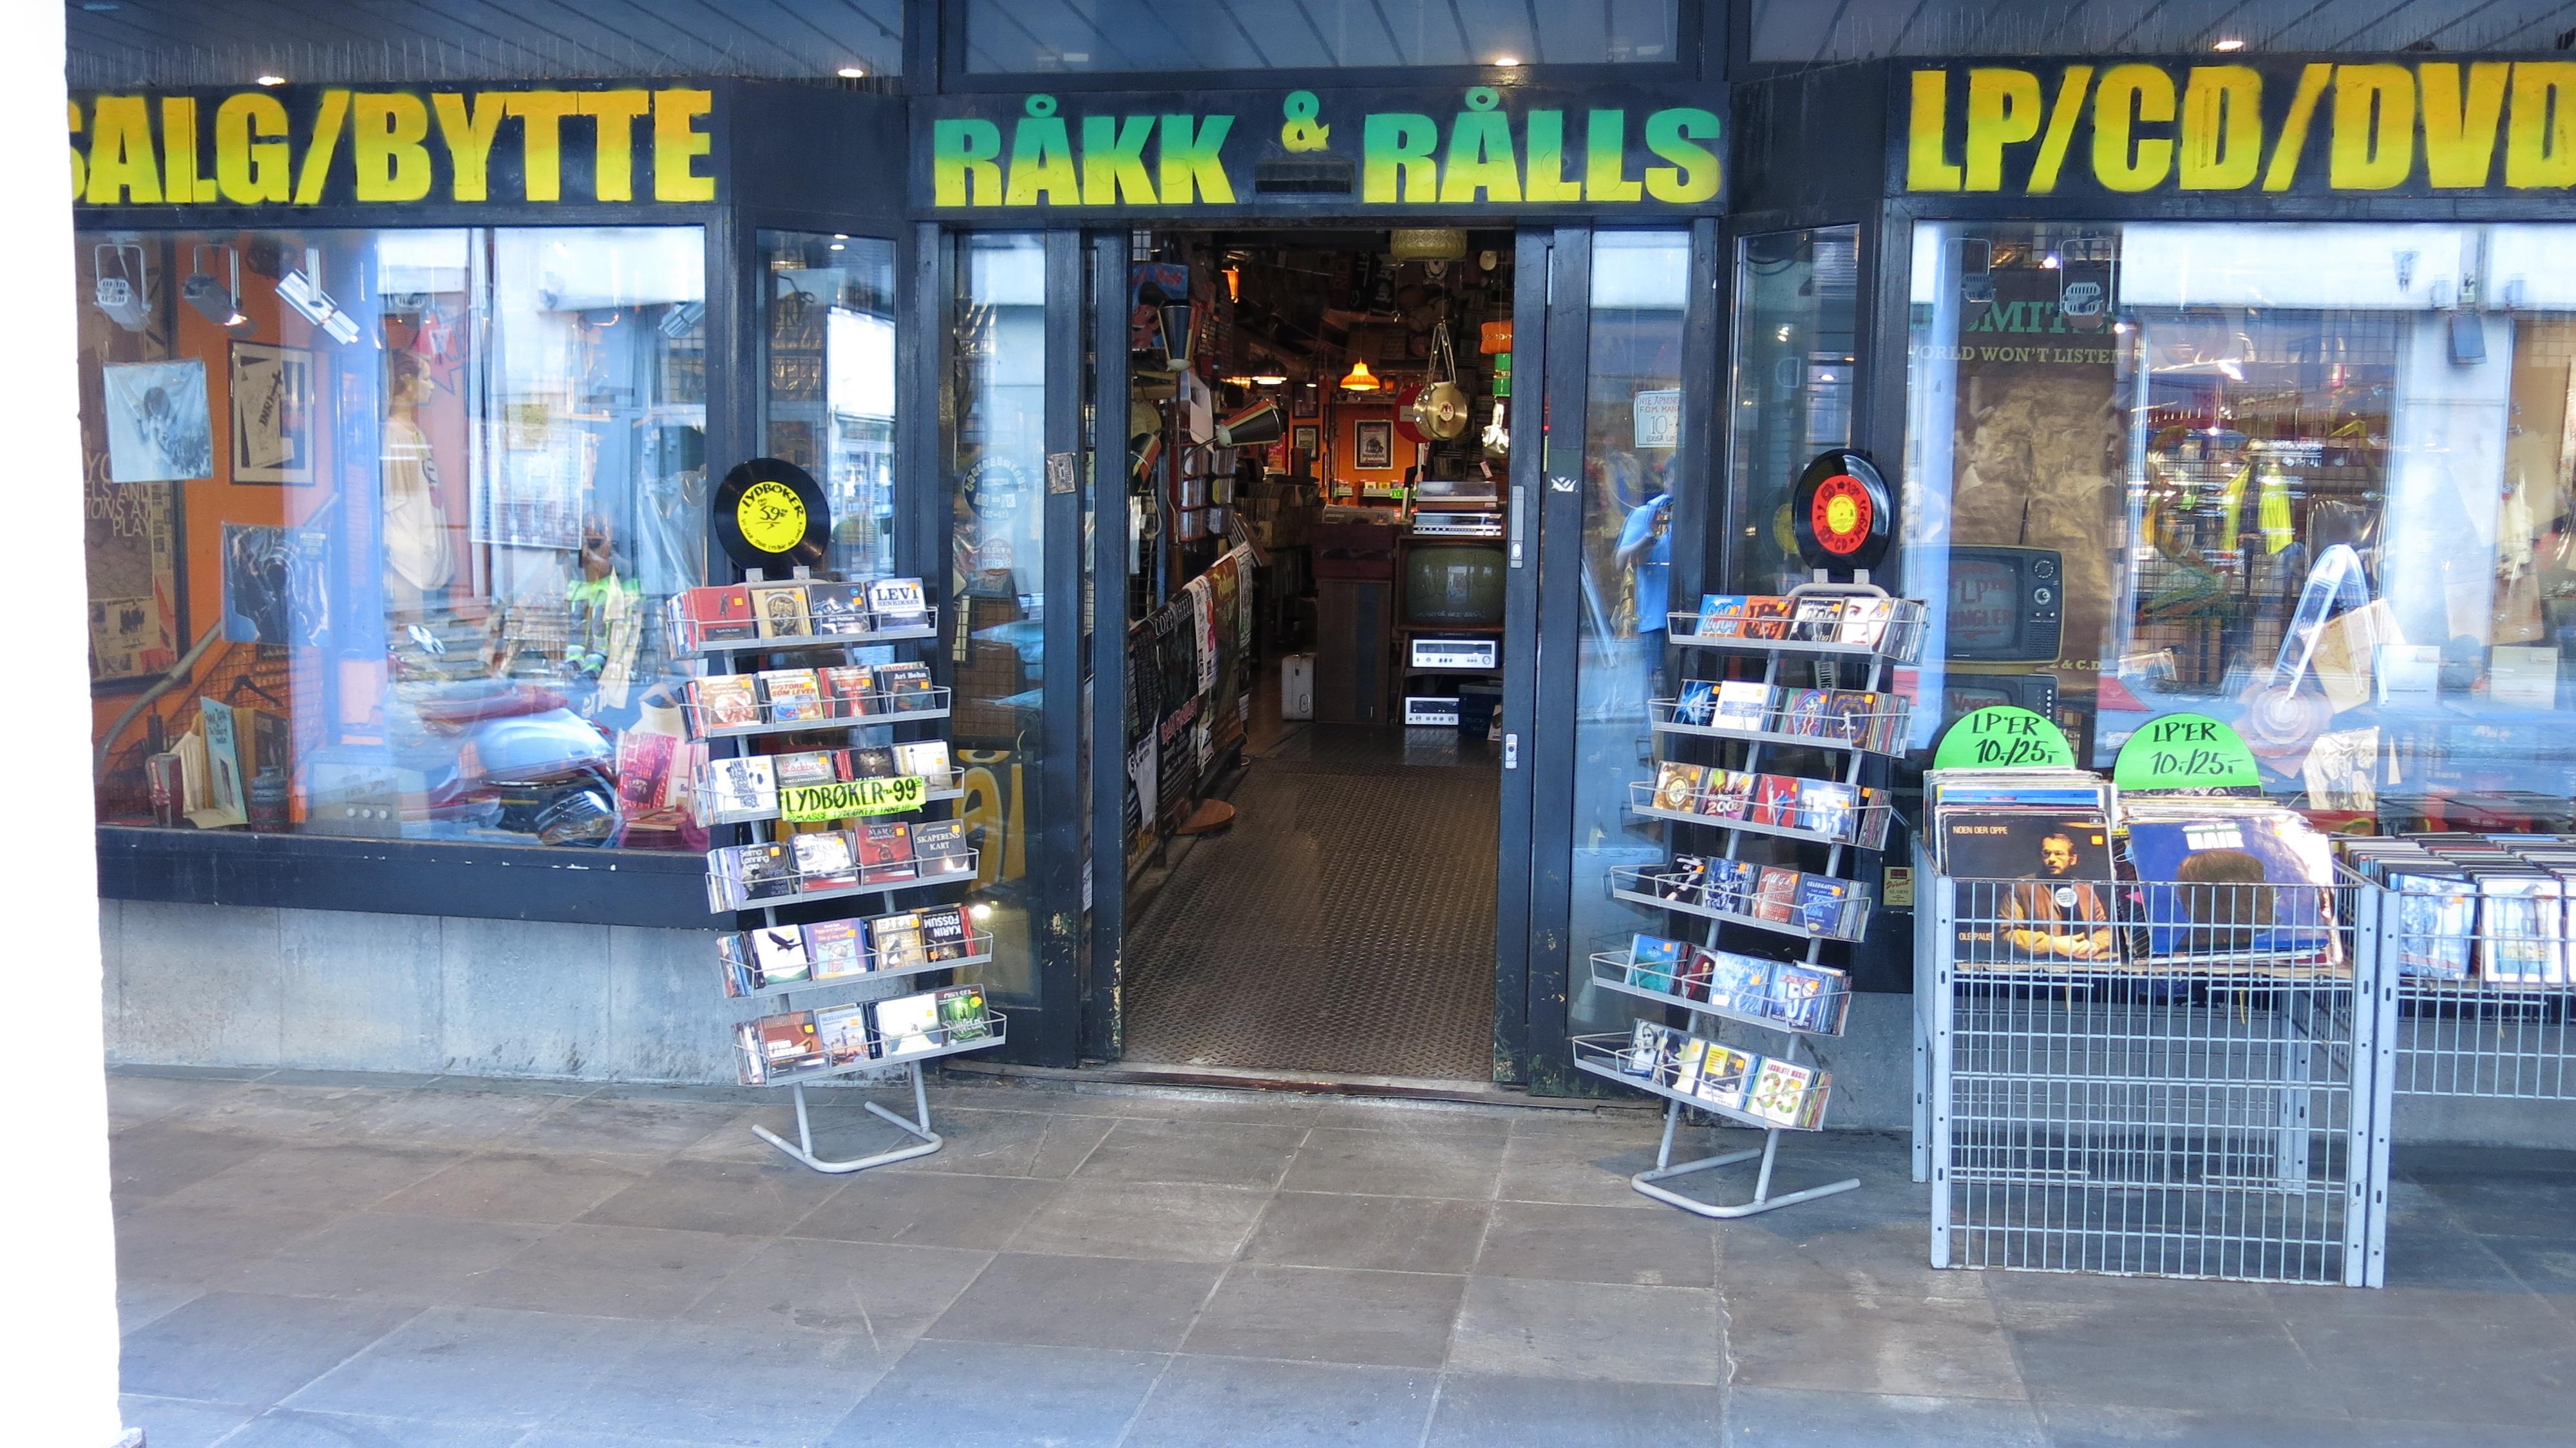 Råkk and Rålls er en platebutikk som fortsatt selger kassetter. .Foto: Ole Henrik Johansen / Hardware.no